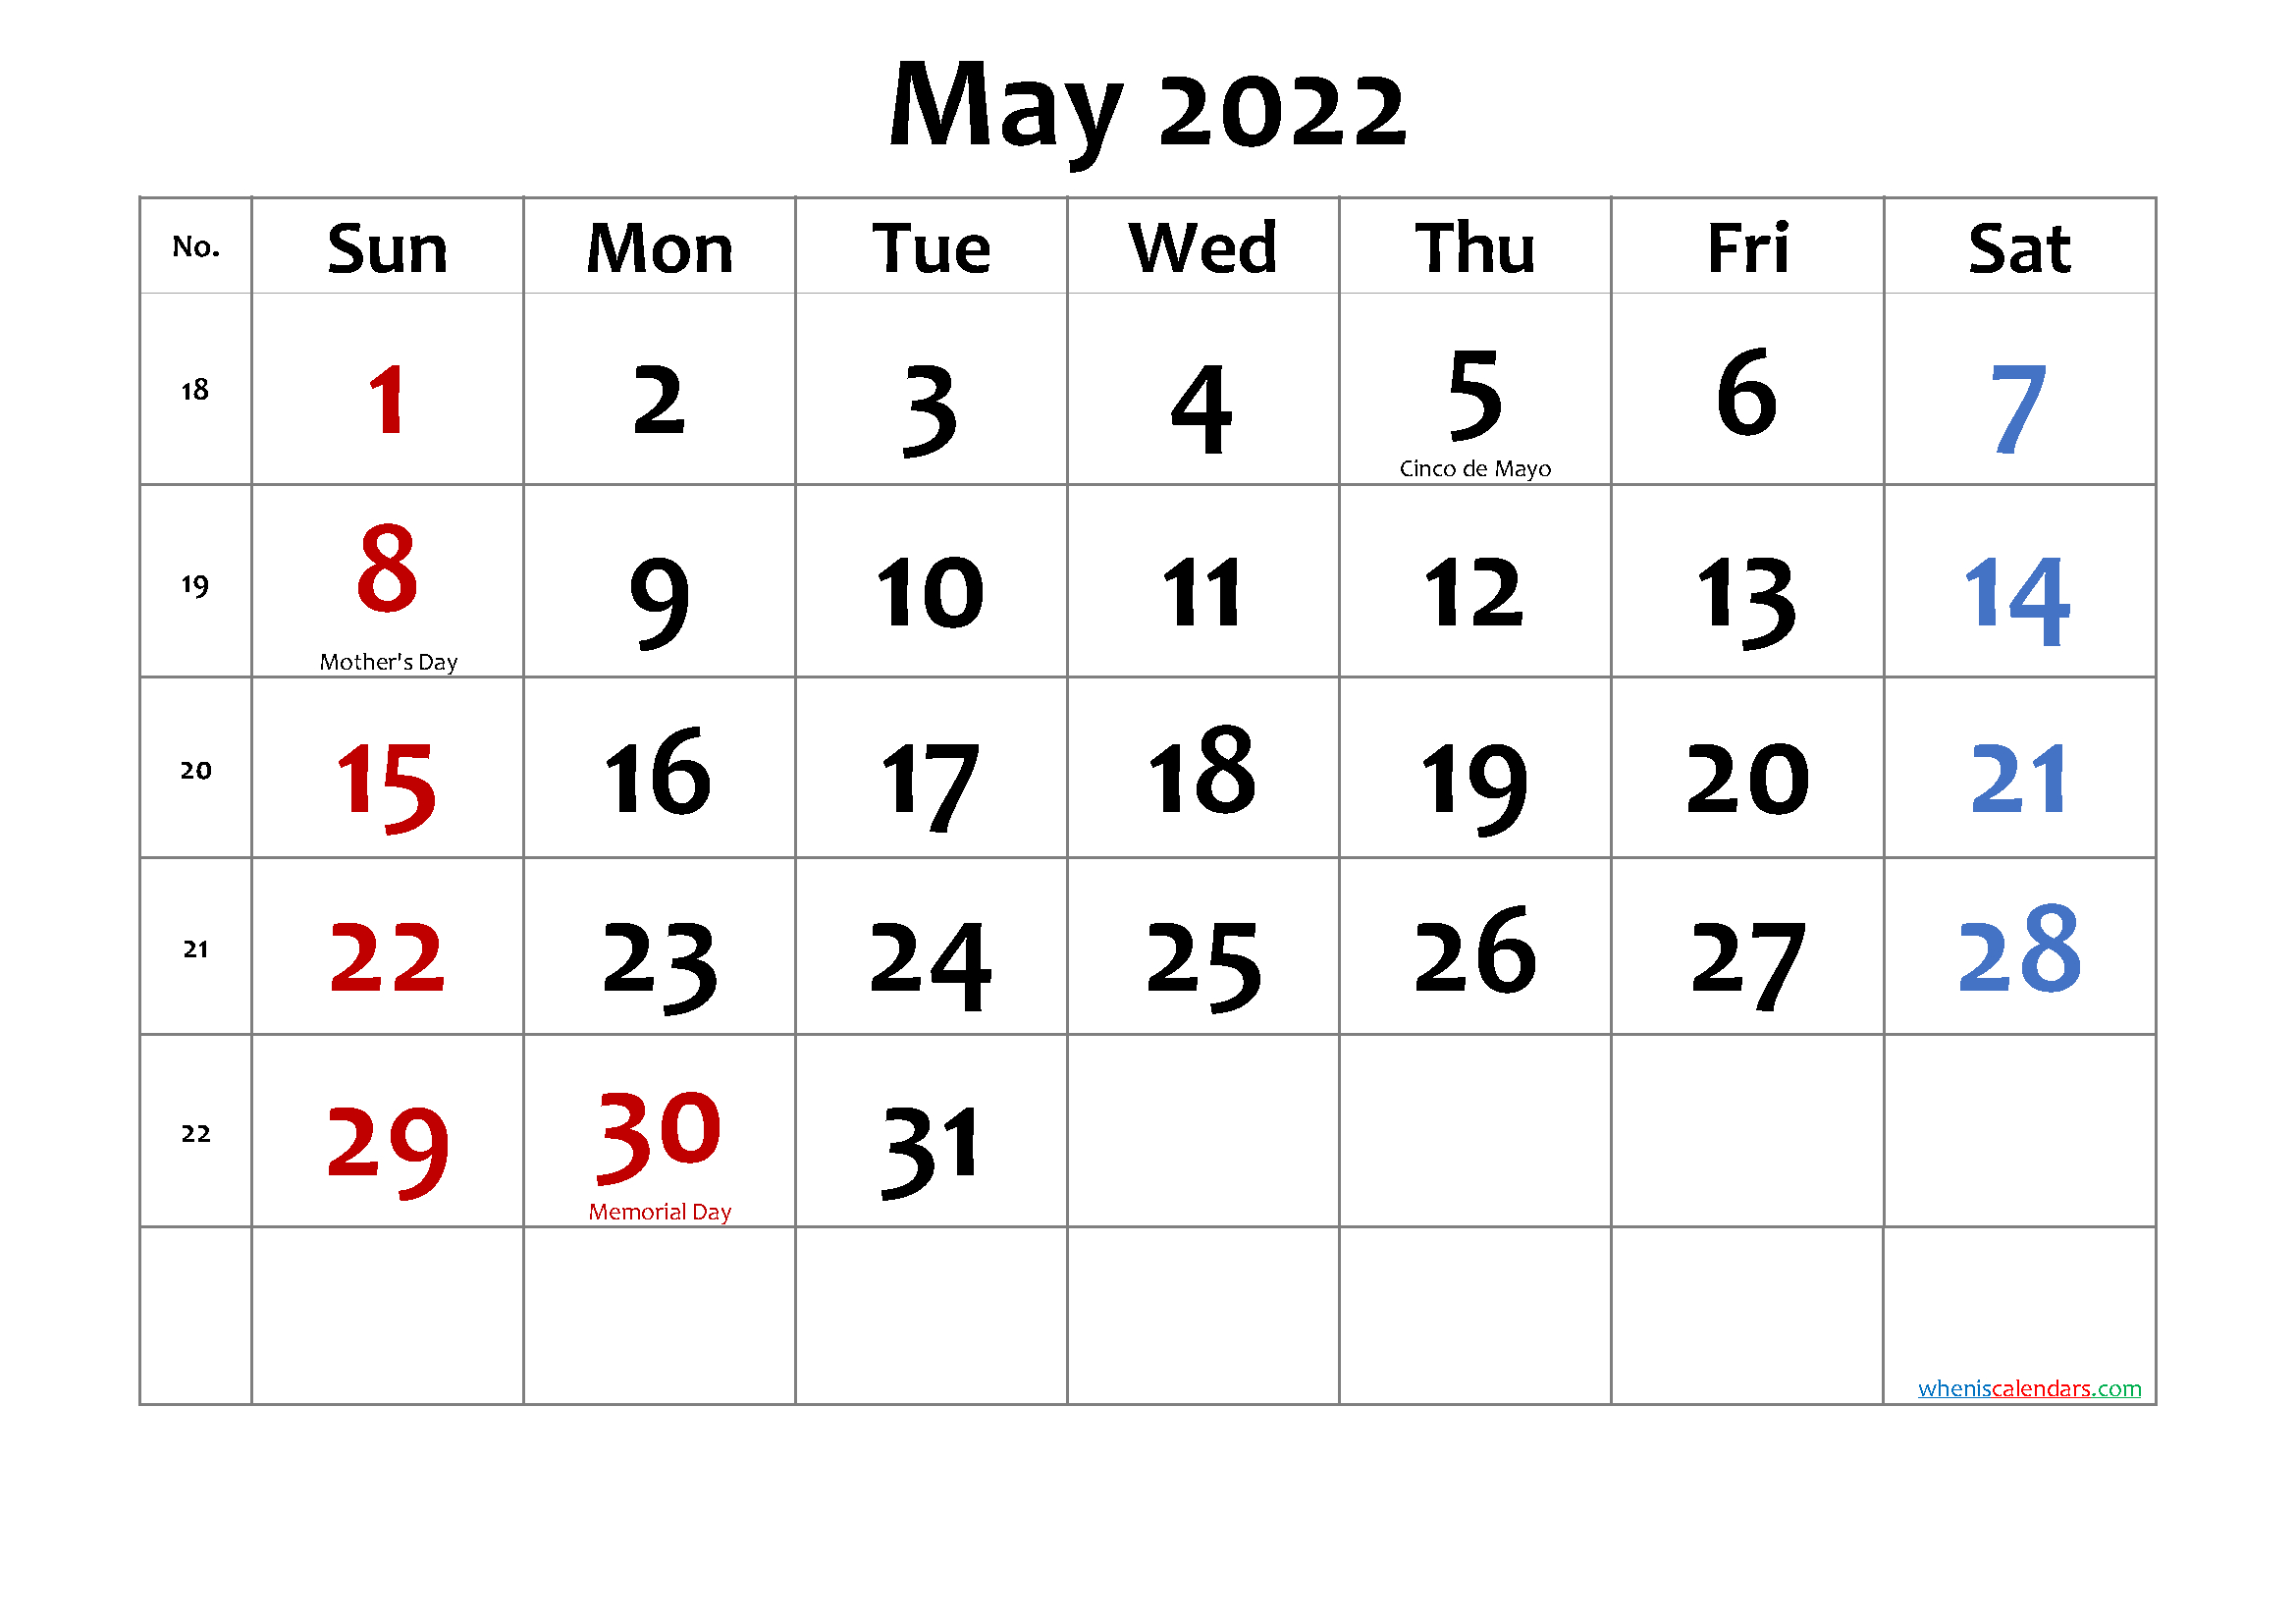 May 2022 Printable Calendar With Holidays - Free Printable